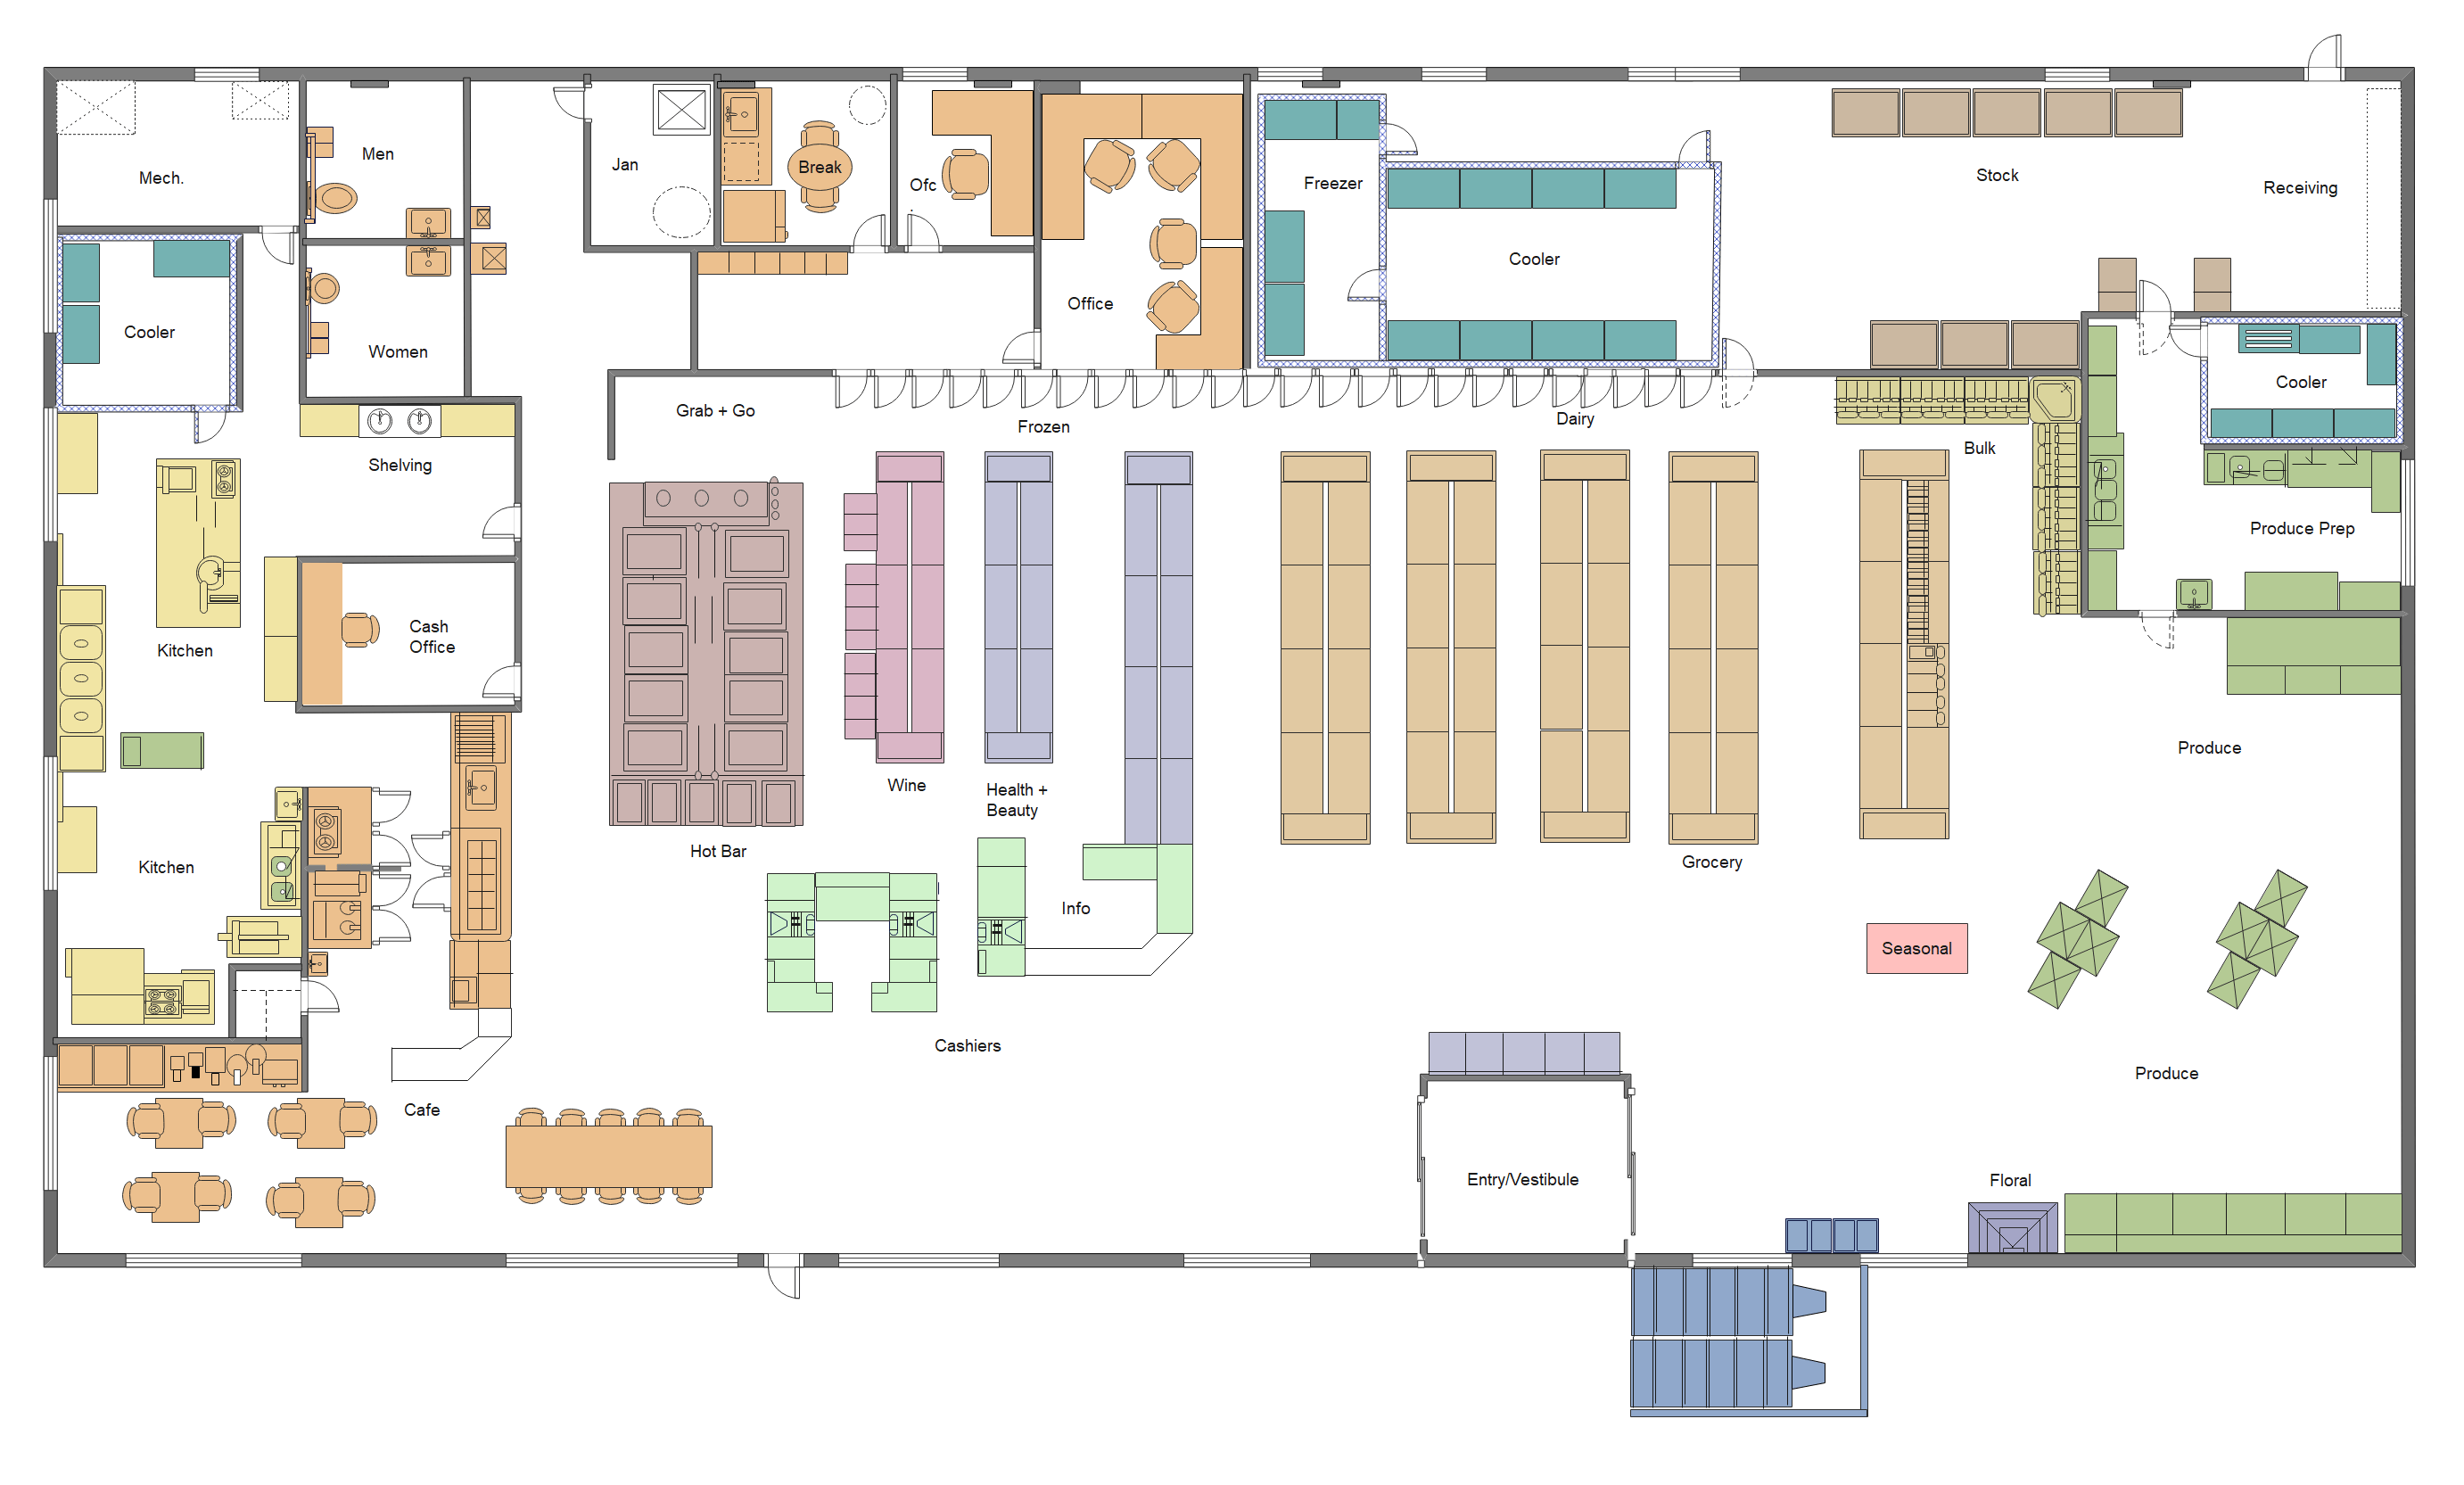 Grocery Store Floor Plan